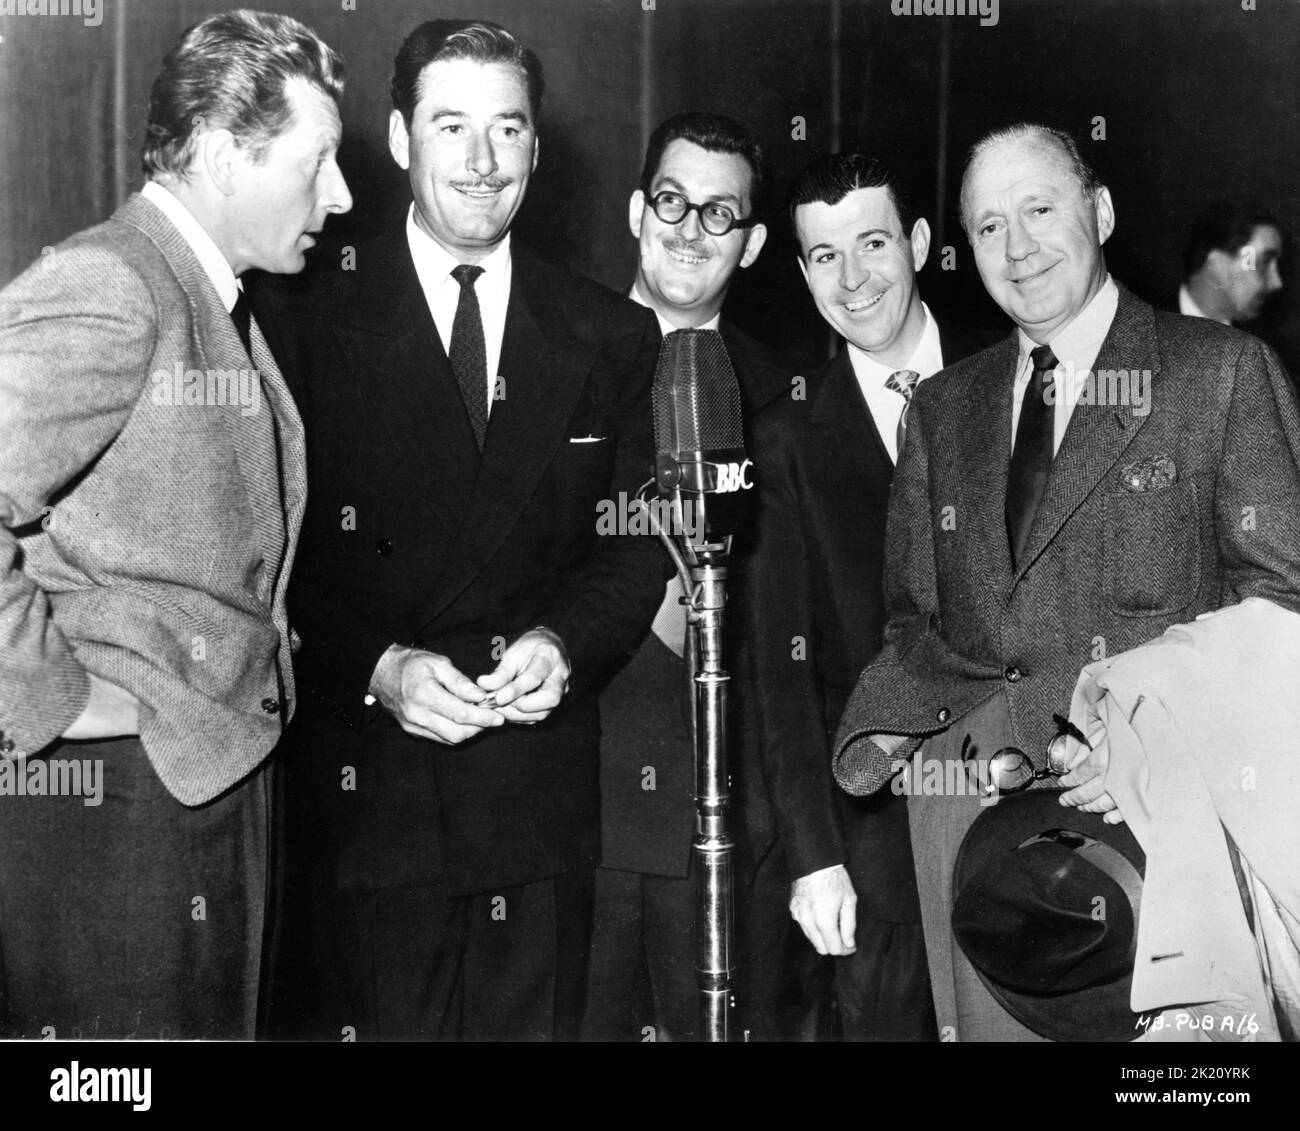 DANNY KAYE ERROL FLYNN Producer PETER DUNCAN DENNIS DAY und JACK BENNY haben während der Übertragung des B.B.B.C. am Mikrofon gecantet Radio Show IN DER STADT HEUTE ABEND in 1952 Werbung für Warner Bros. Stockfoto